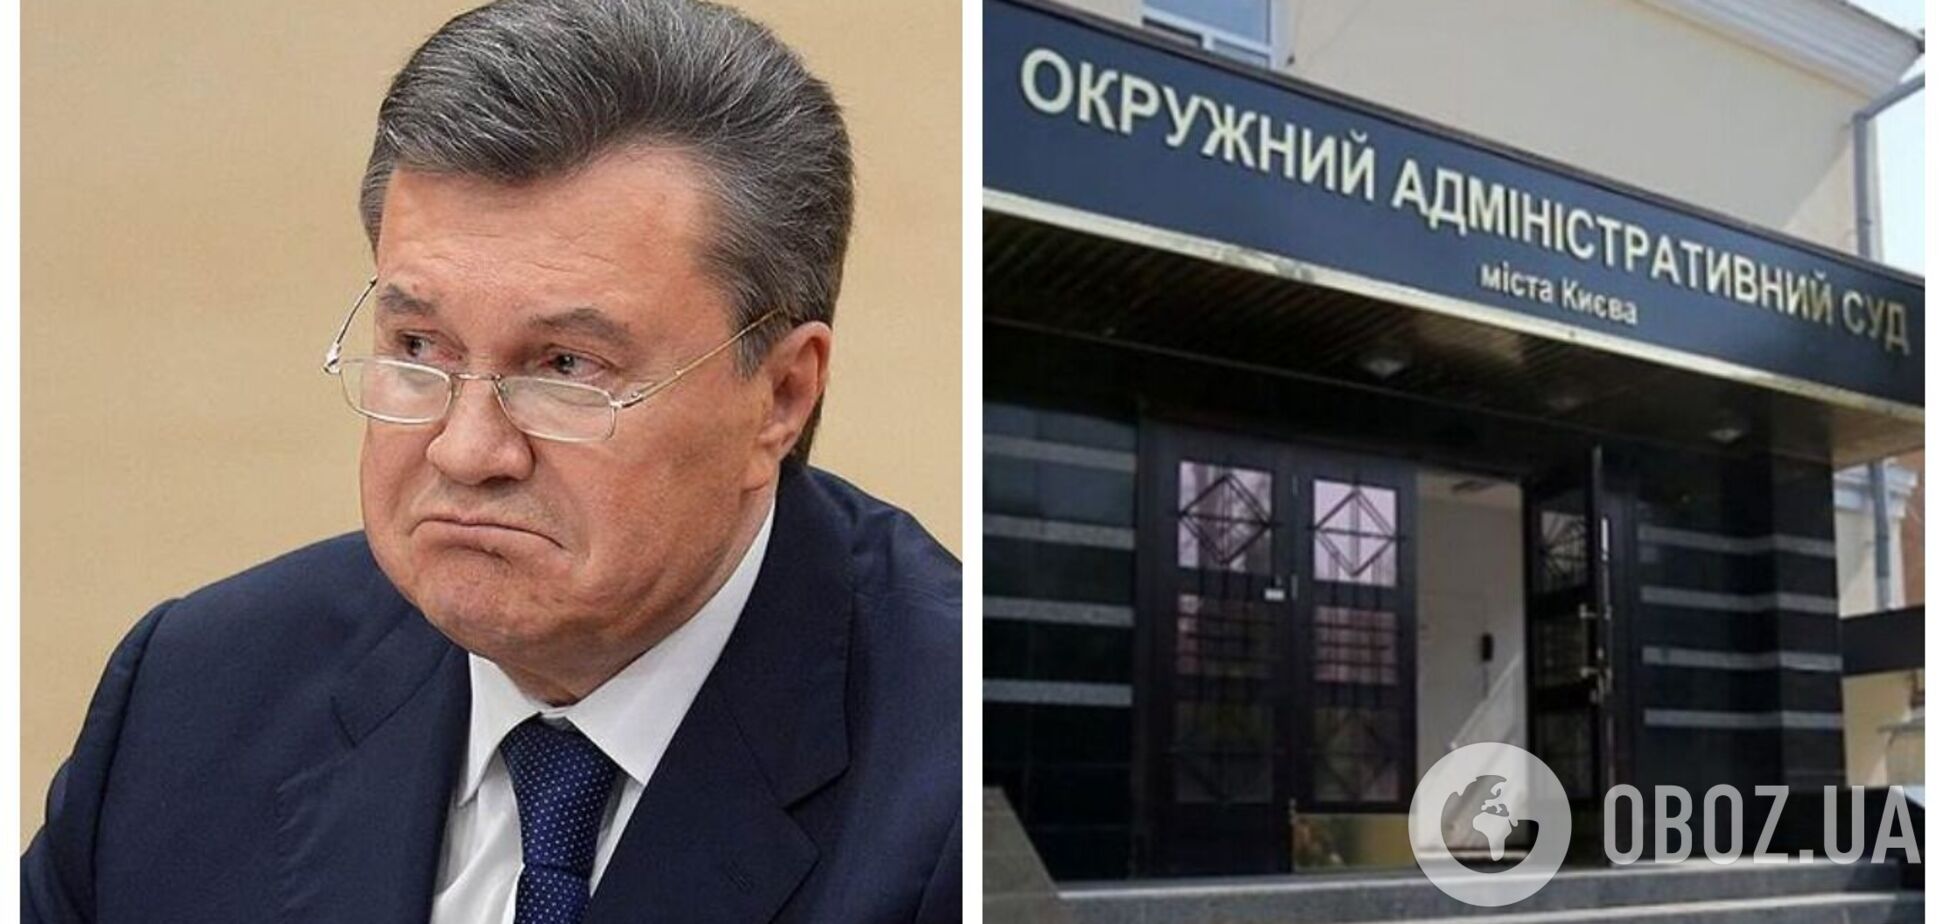 Янукович пытается через суд оспорить отстранение с должности президента Украины